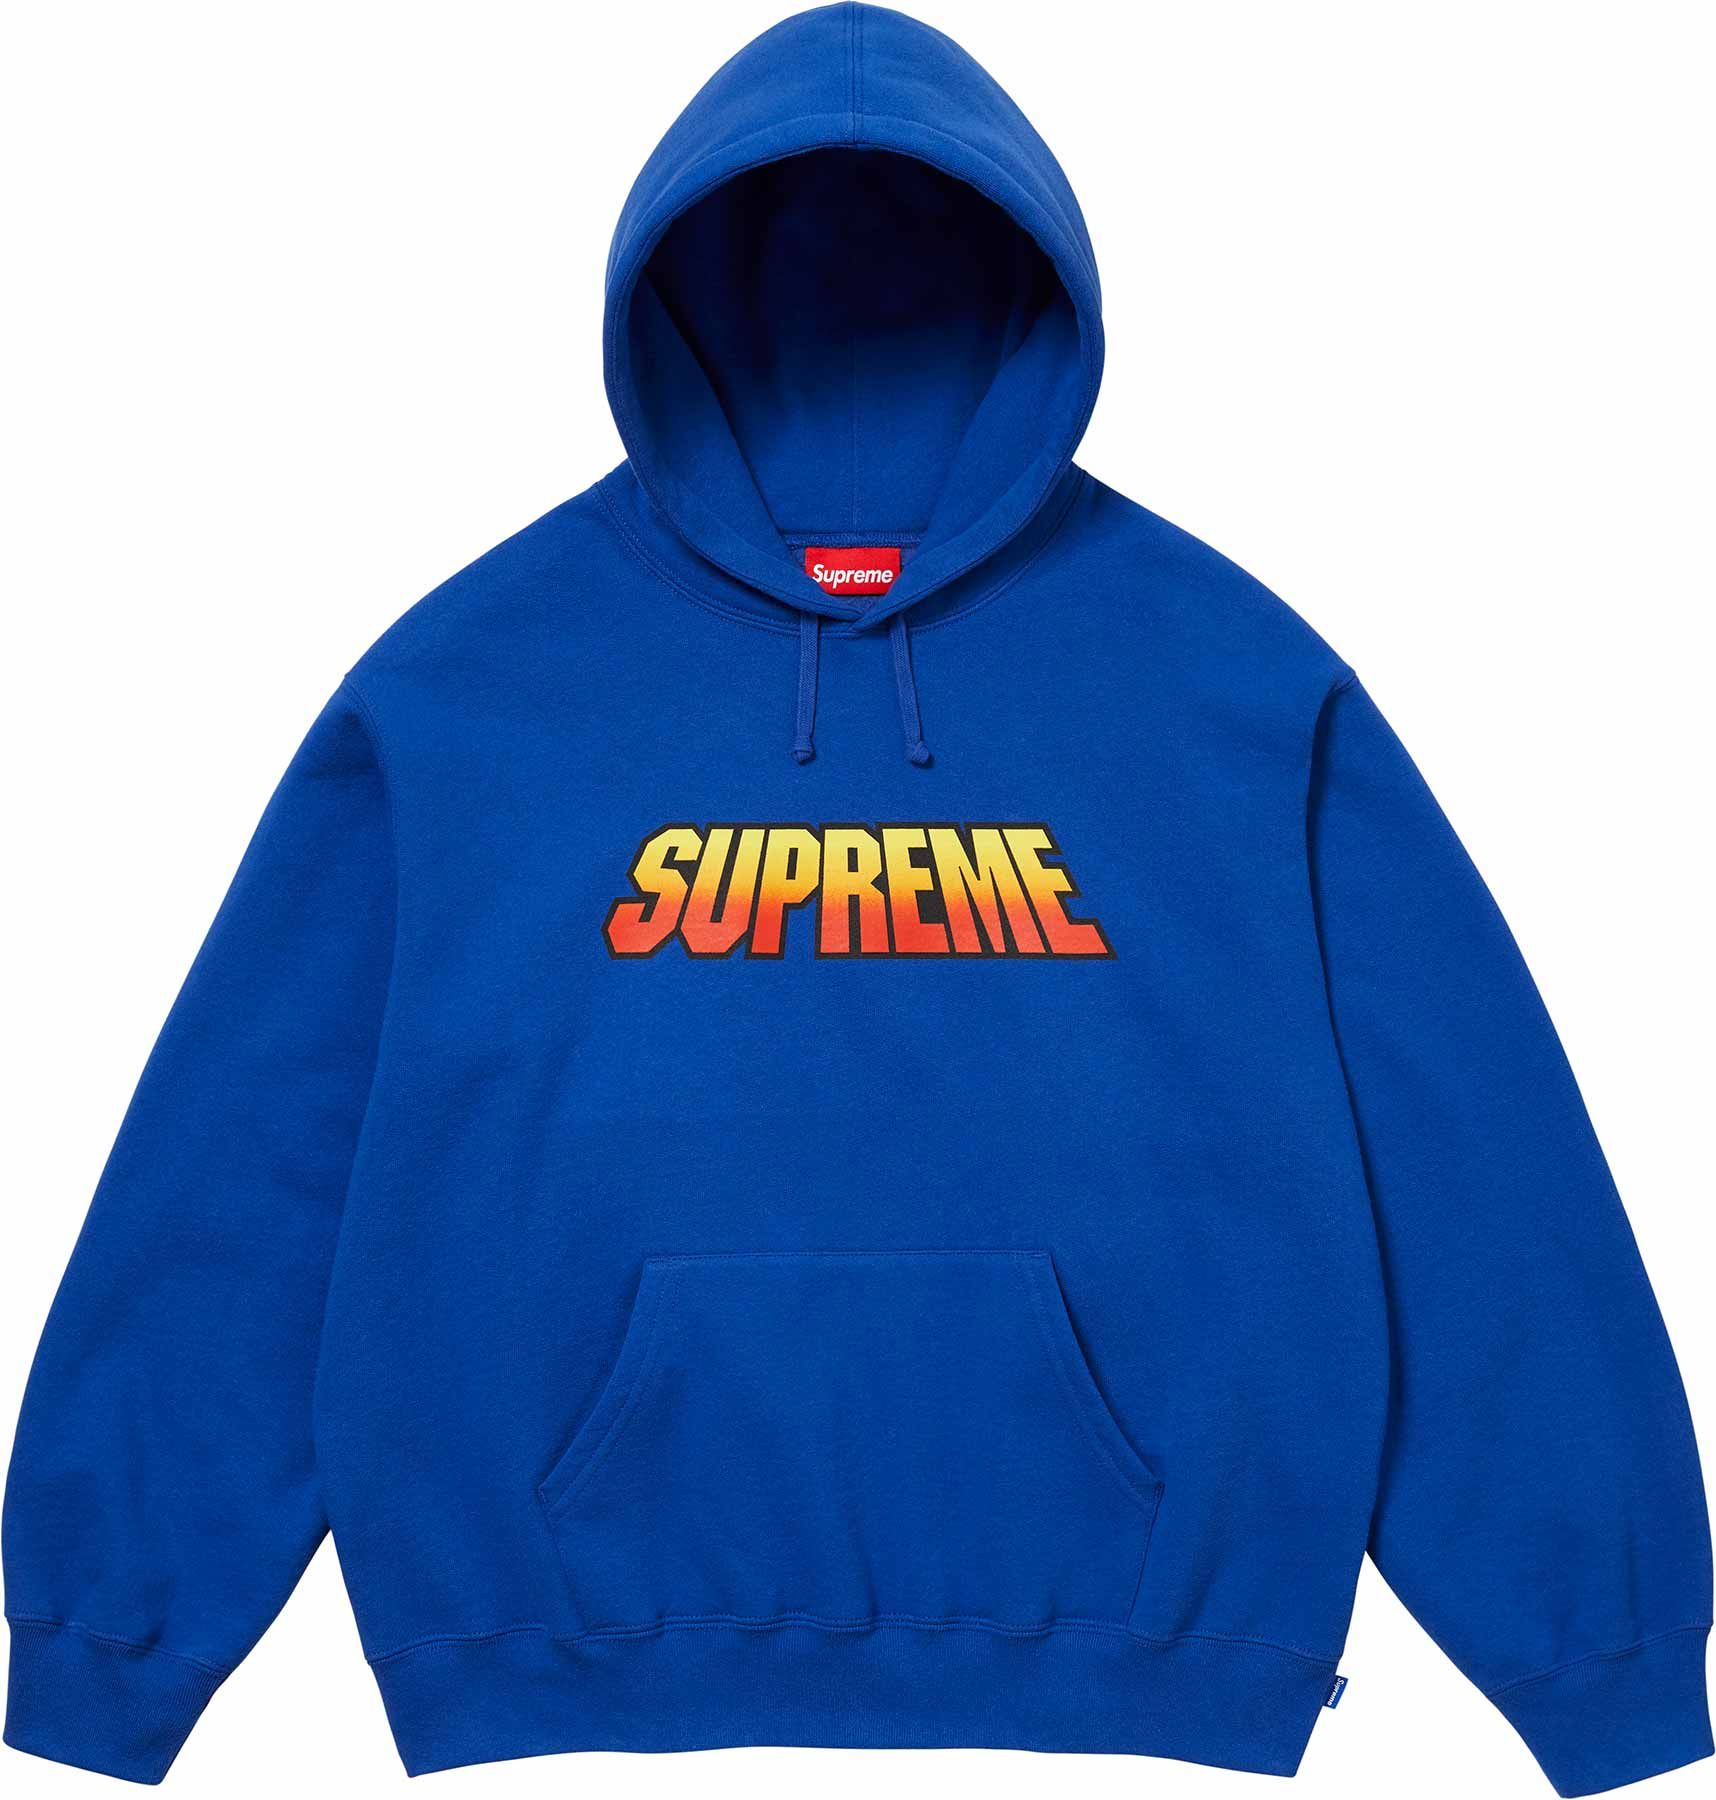 Spread Zip Up Hooded Sweatshirt - Supreme